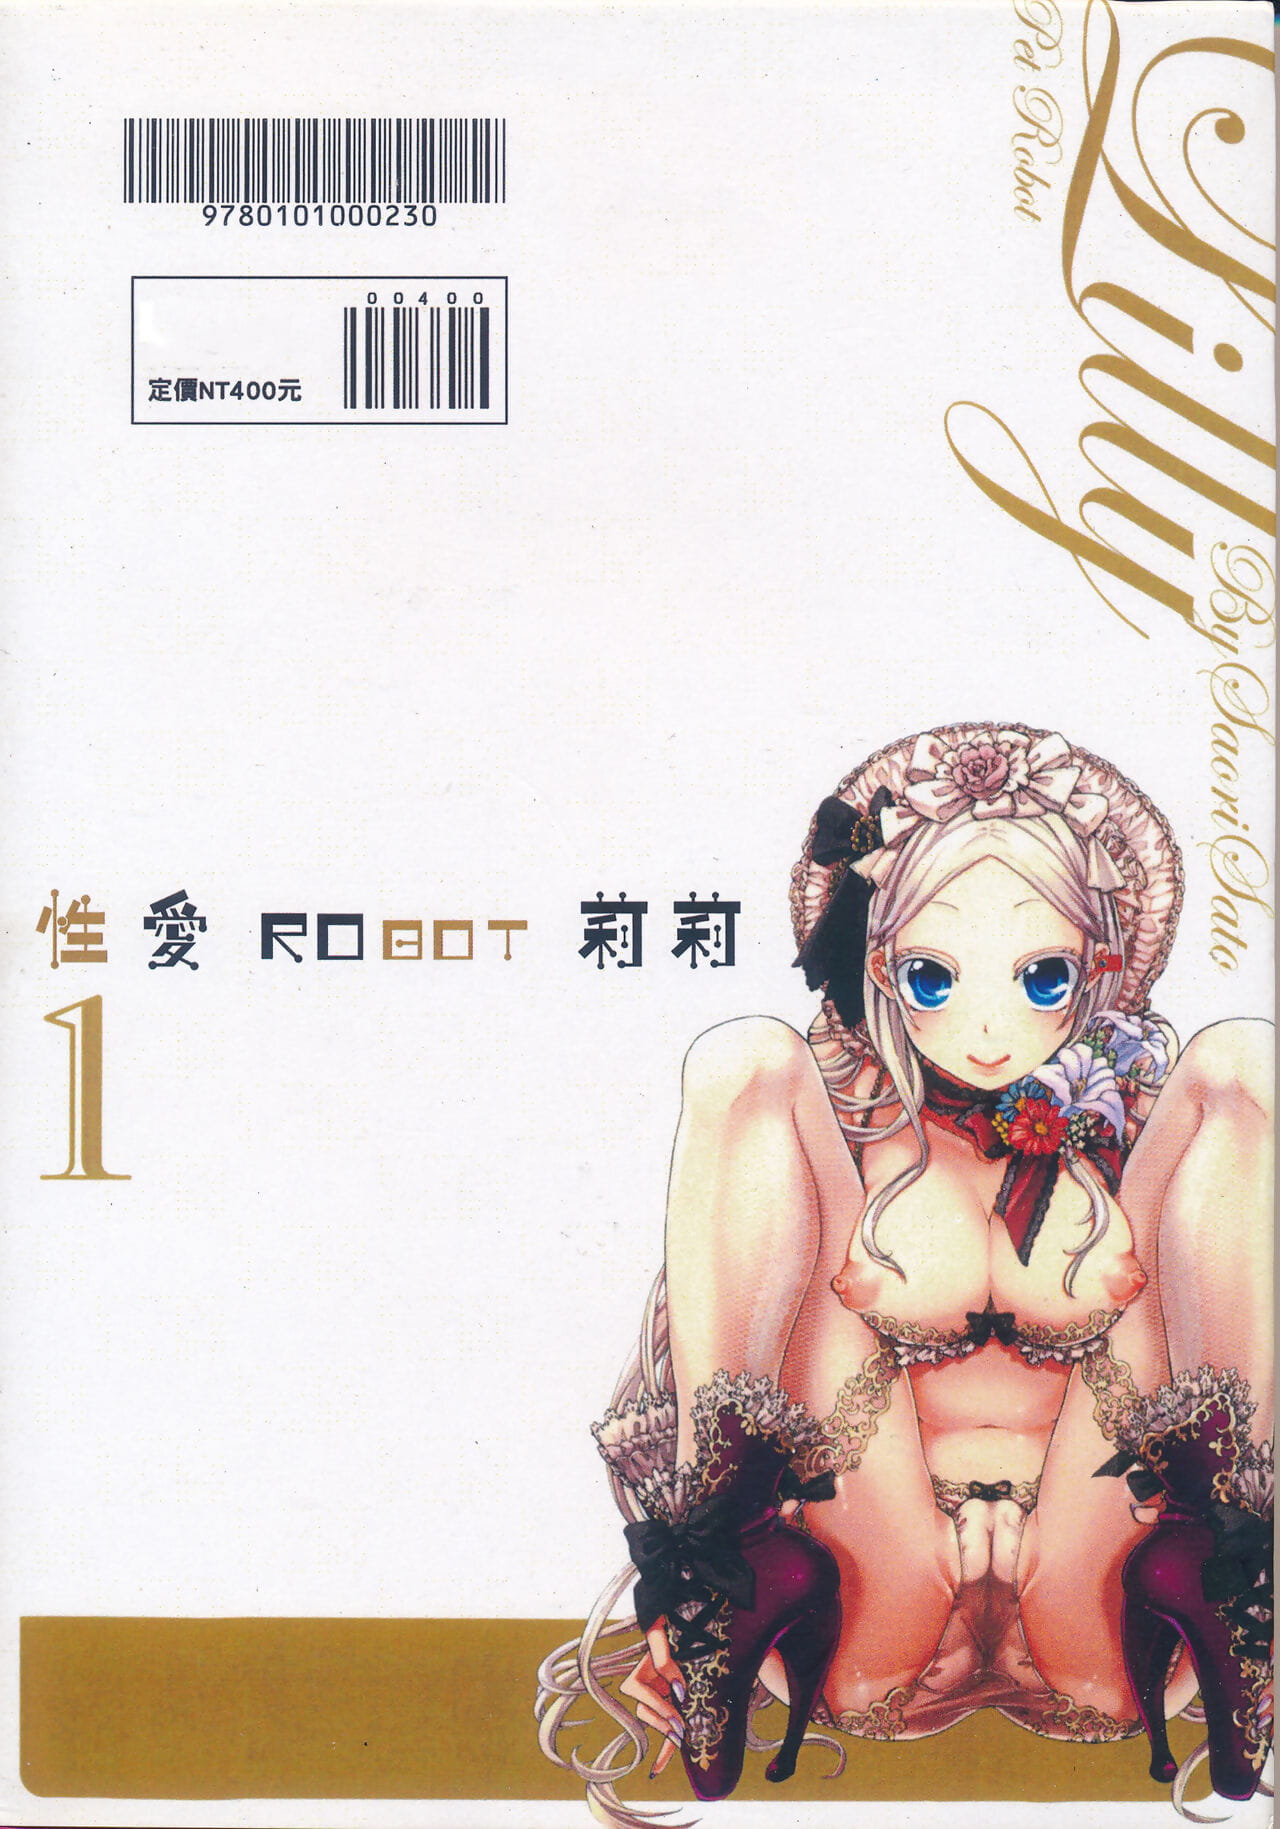 Satou Saori aigan robot Lilly thú nuôi robot Lilly vol. 1 性愛robot 莉莉 vol. 1 Người trung quốc phần 7